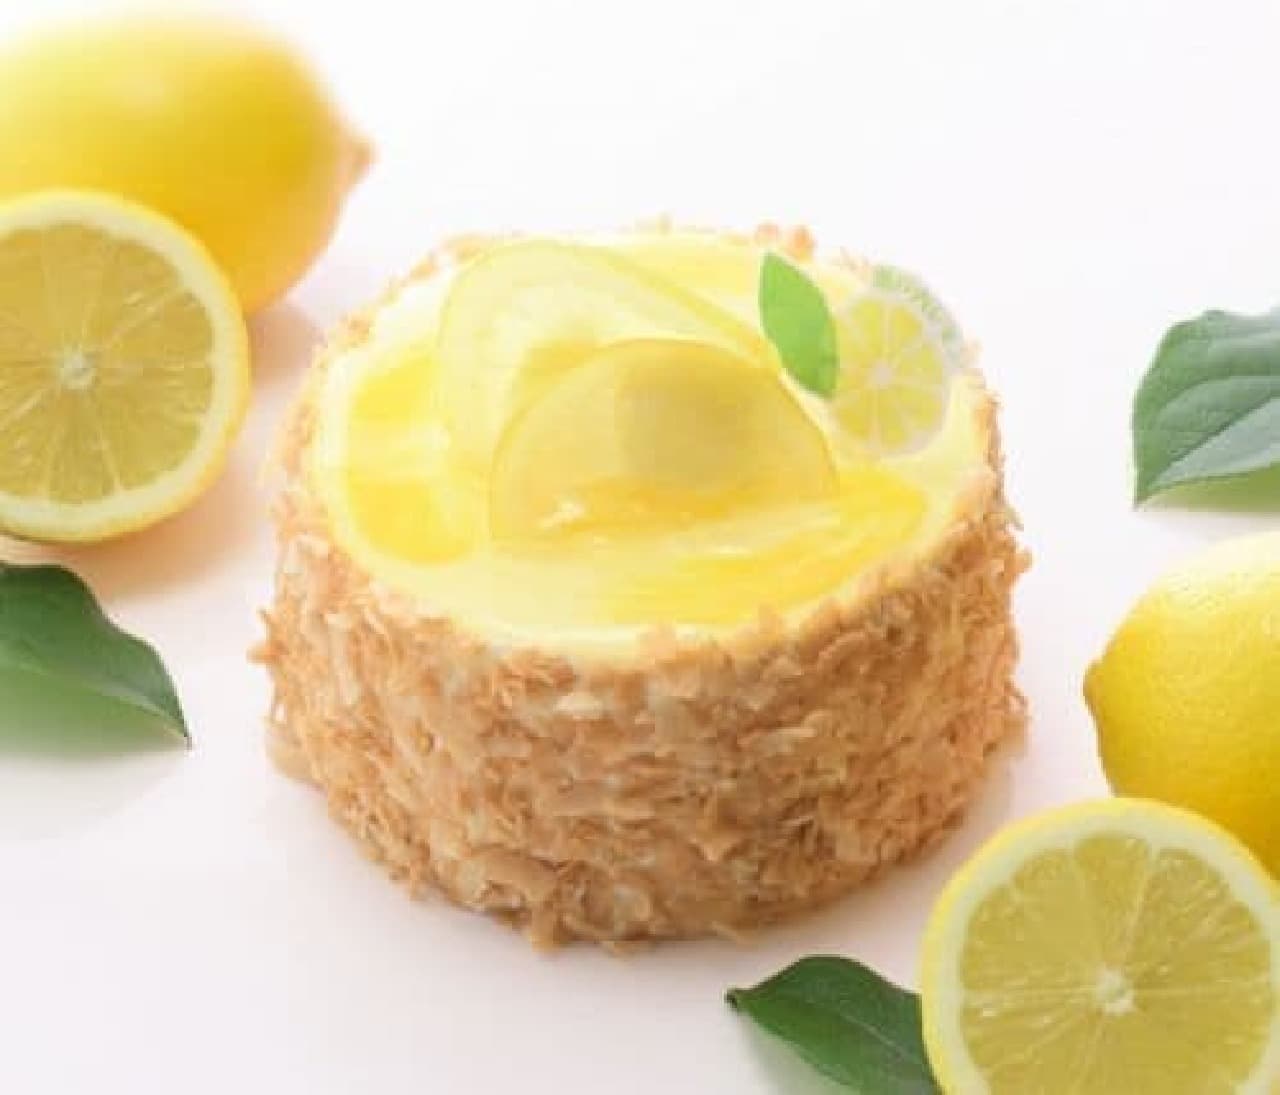 銀座コージーコーナー「瀬戸内レモンのレアチーズ」